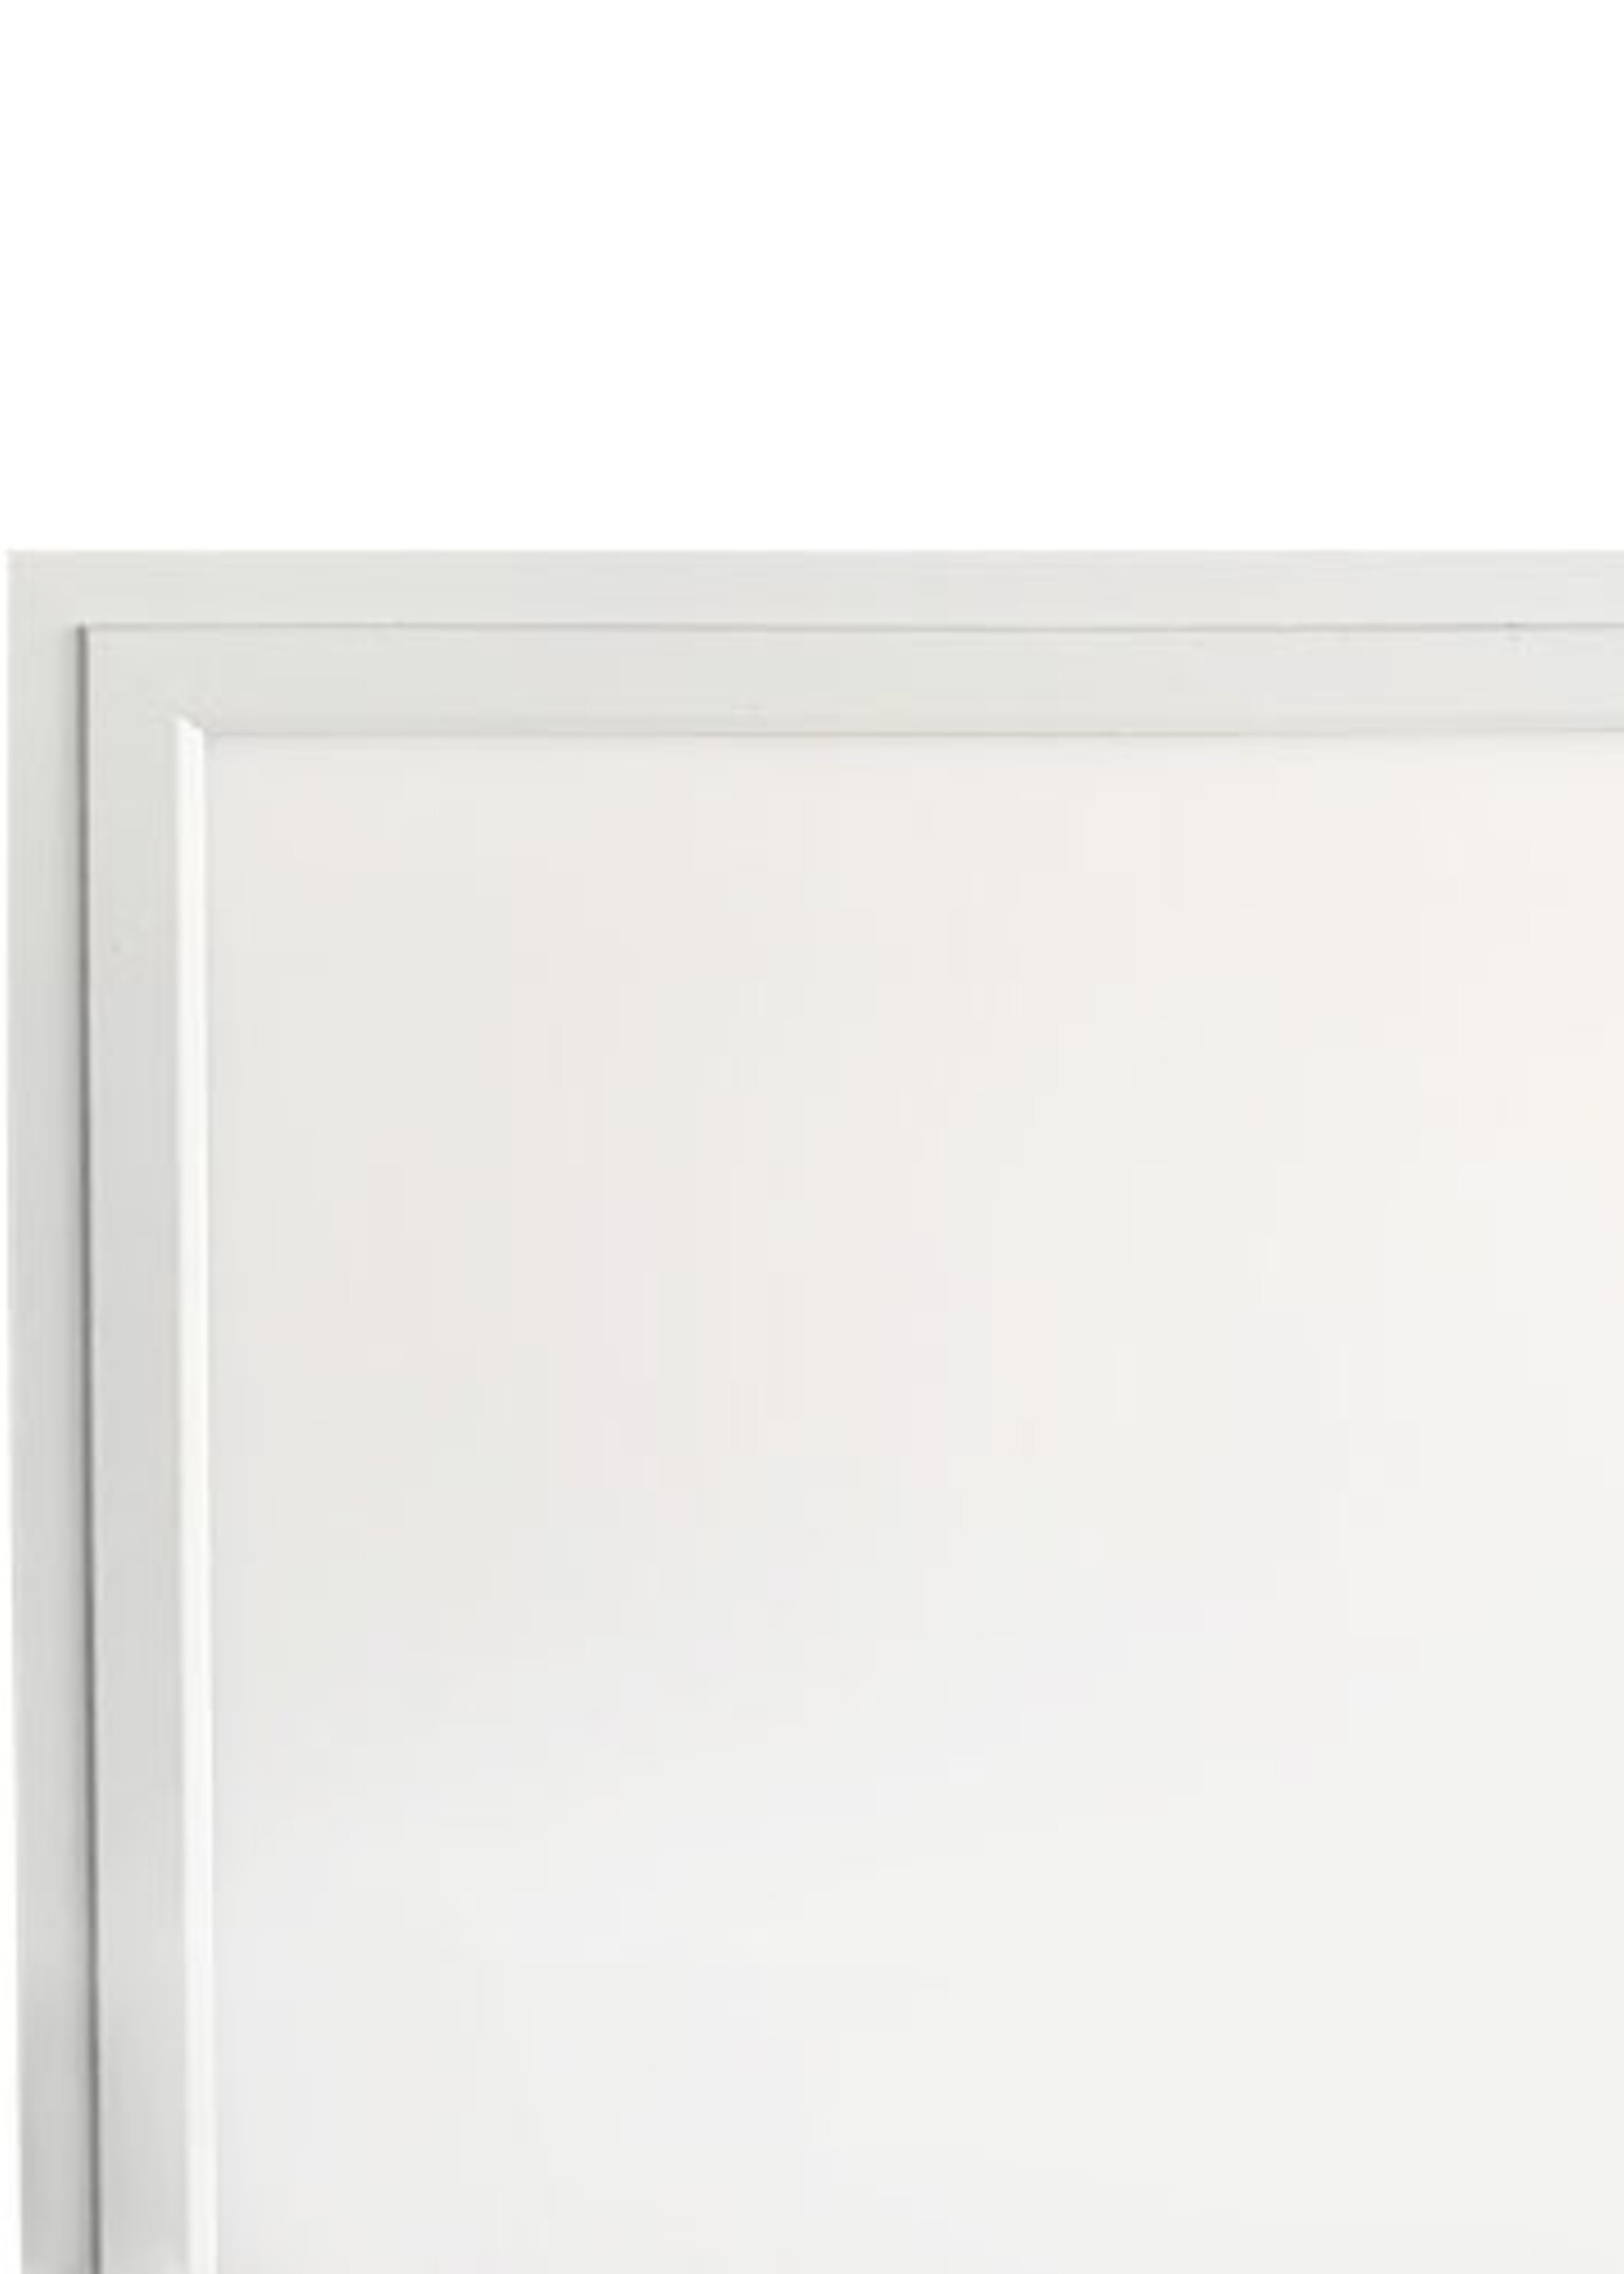 LEDWINKEL-Online LED Panel 30x30cm 18W 85lm/W Edge-lit